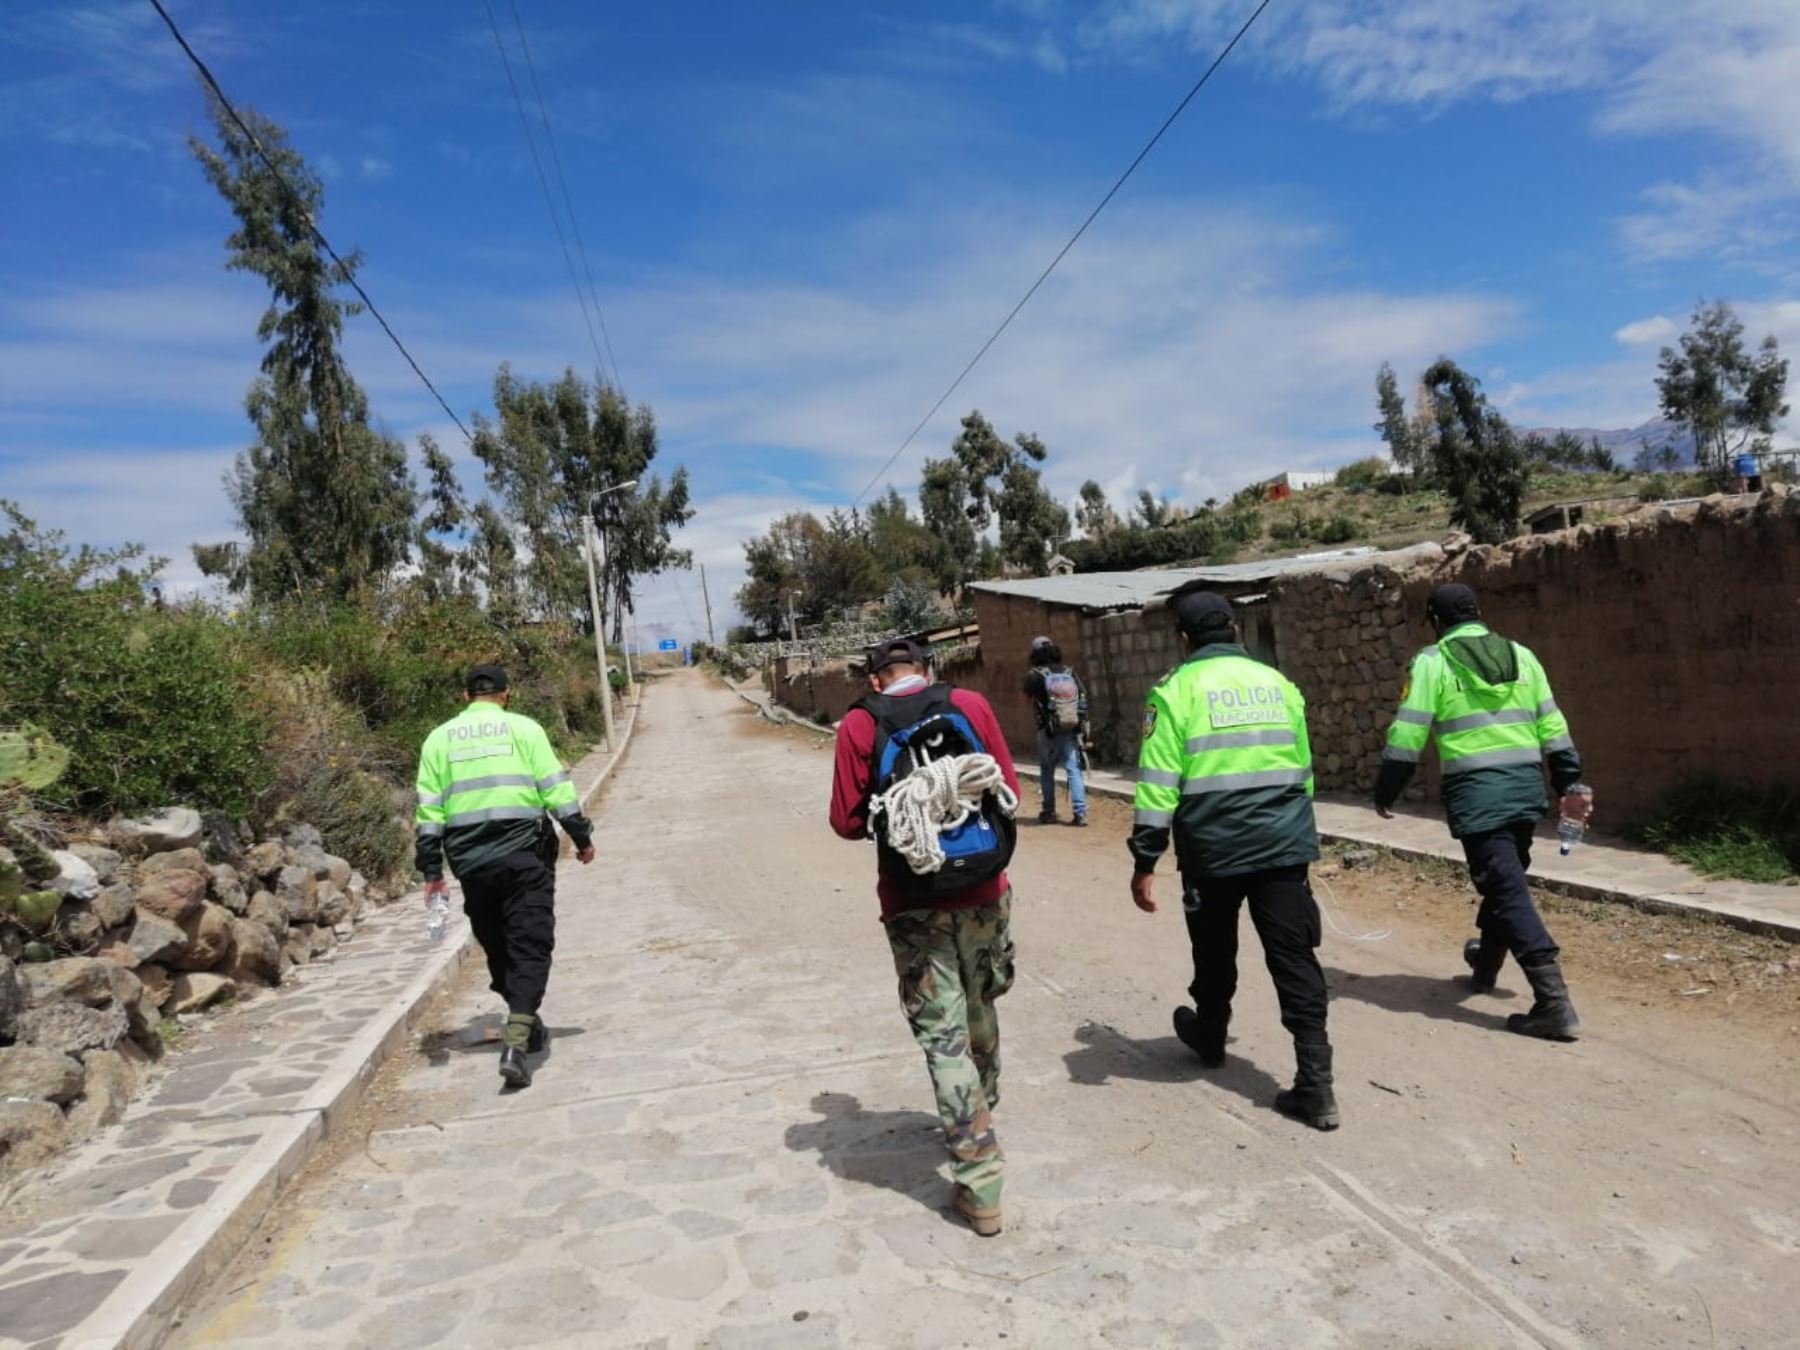 La Policía Nacional inició la búsqueda de la turista de nacionalidad belga desaparecida en el valle del Colca, en la sierra de la región Arequipa. Foto: ANDINA/difusión.